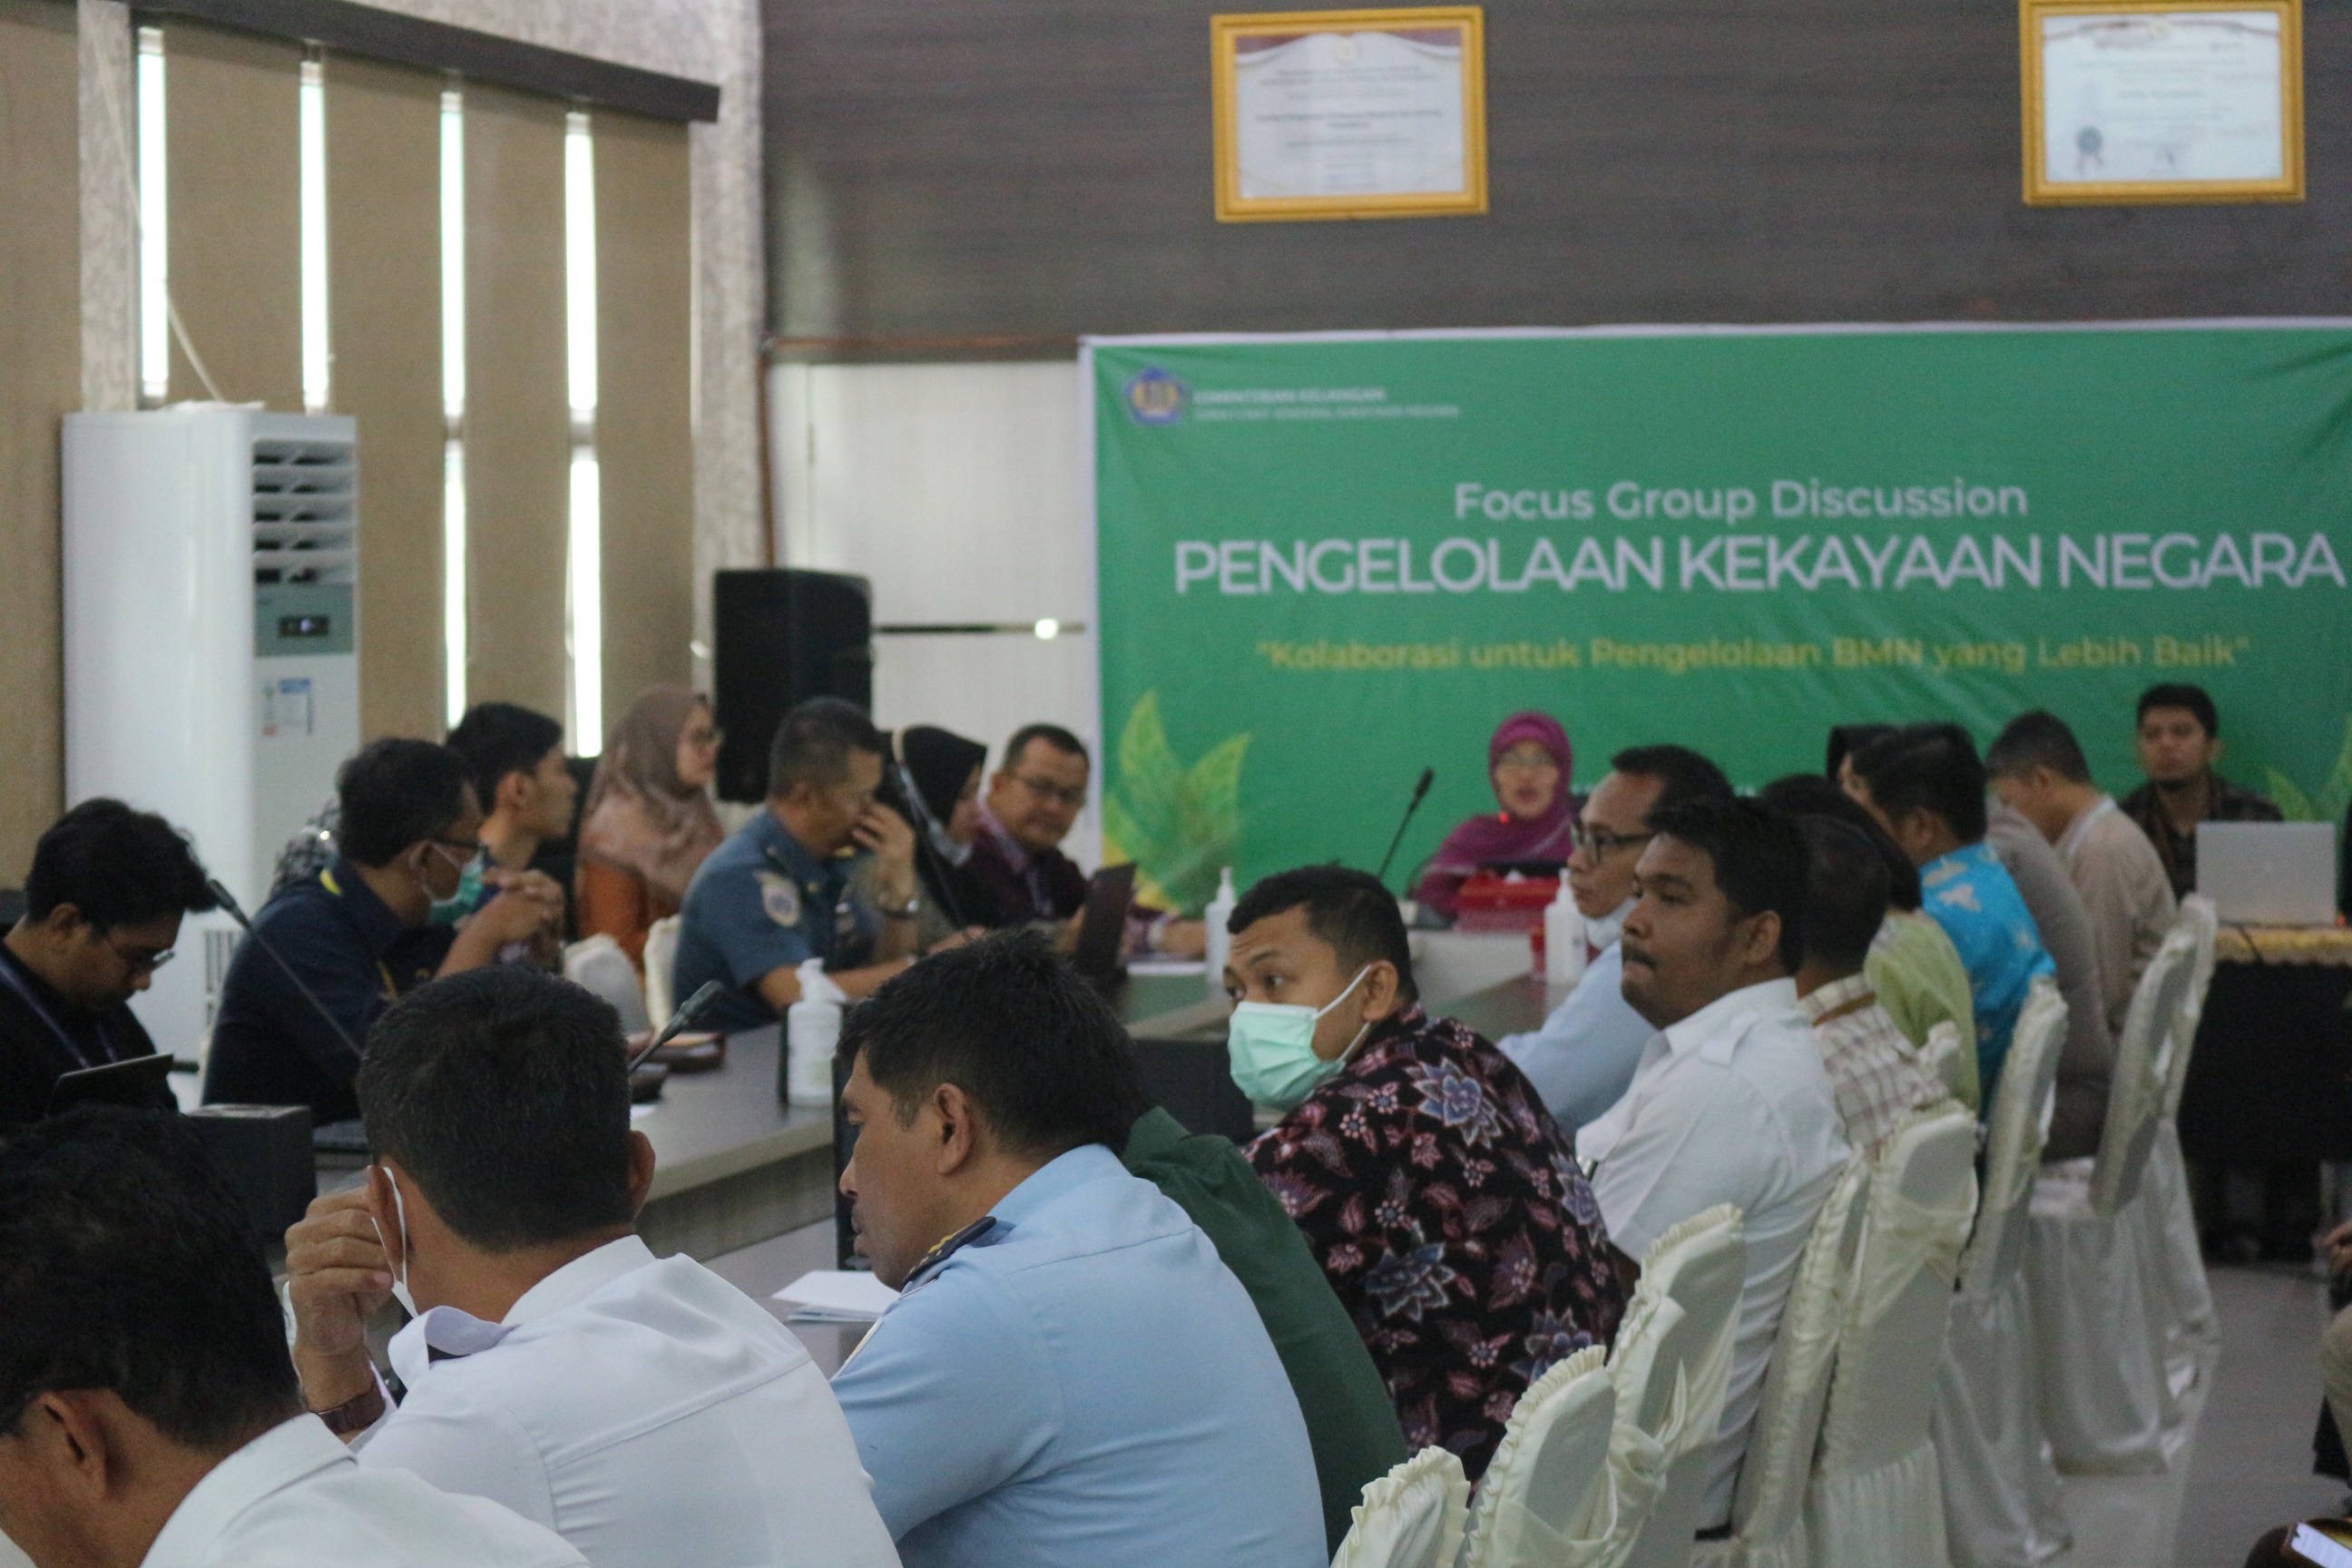 Focus Group Discussion KPKNL Pekanbaru: Kolaborasi untuk Pengelolaan BMN yang Lebih Baik